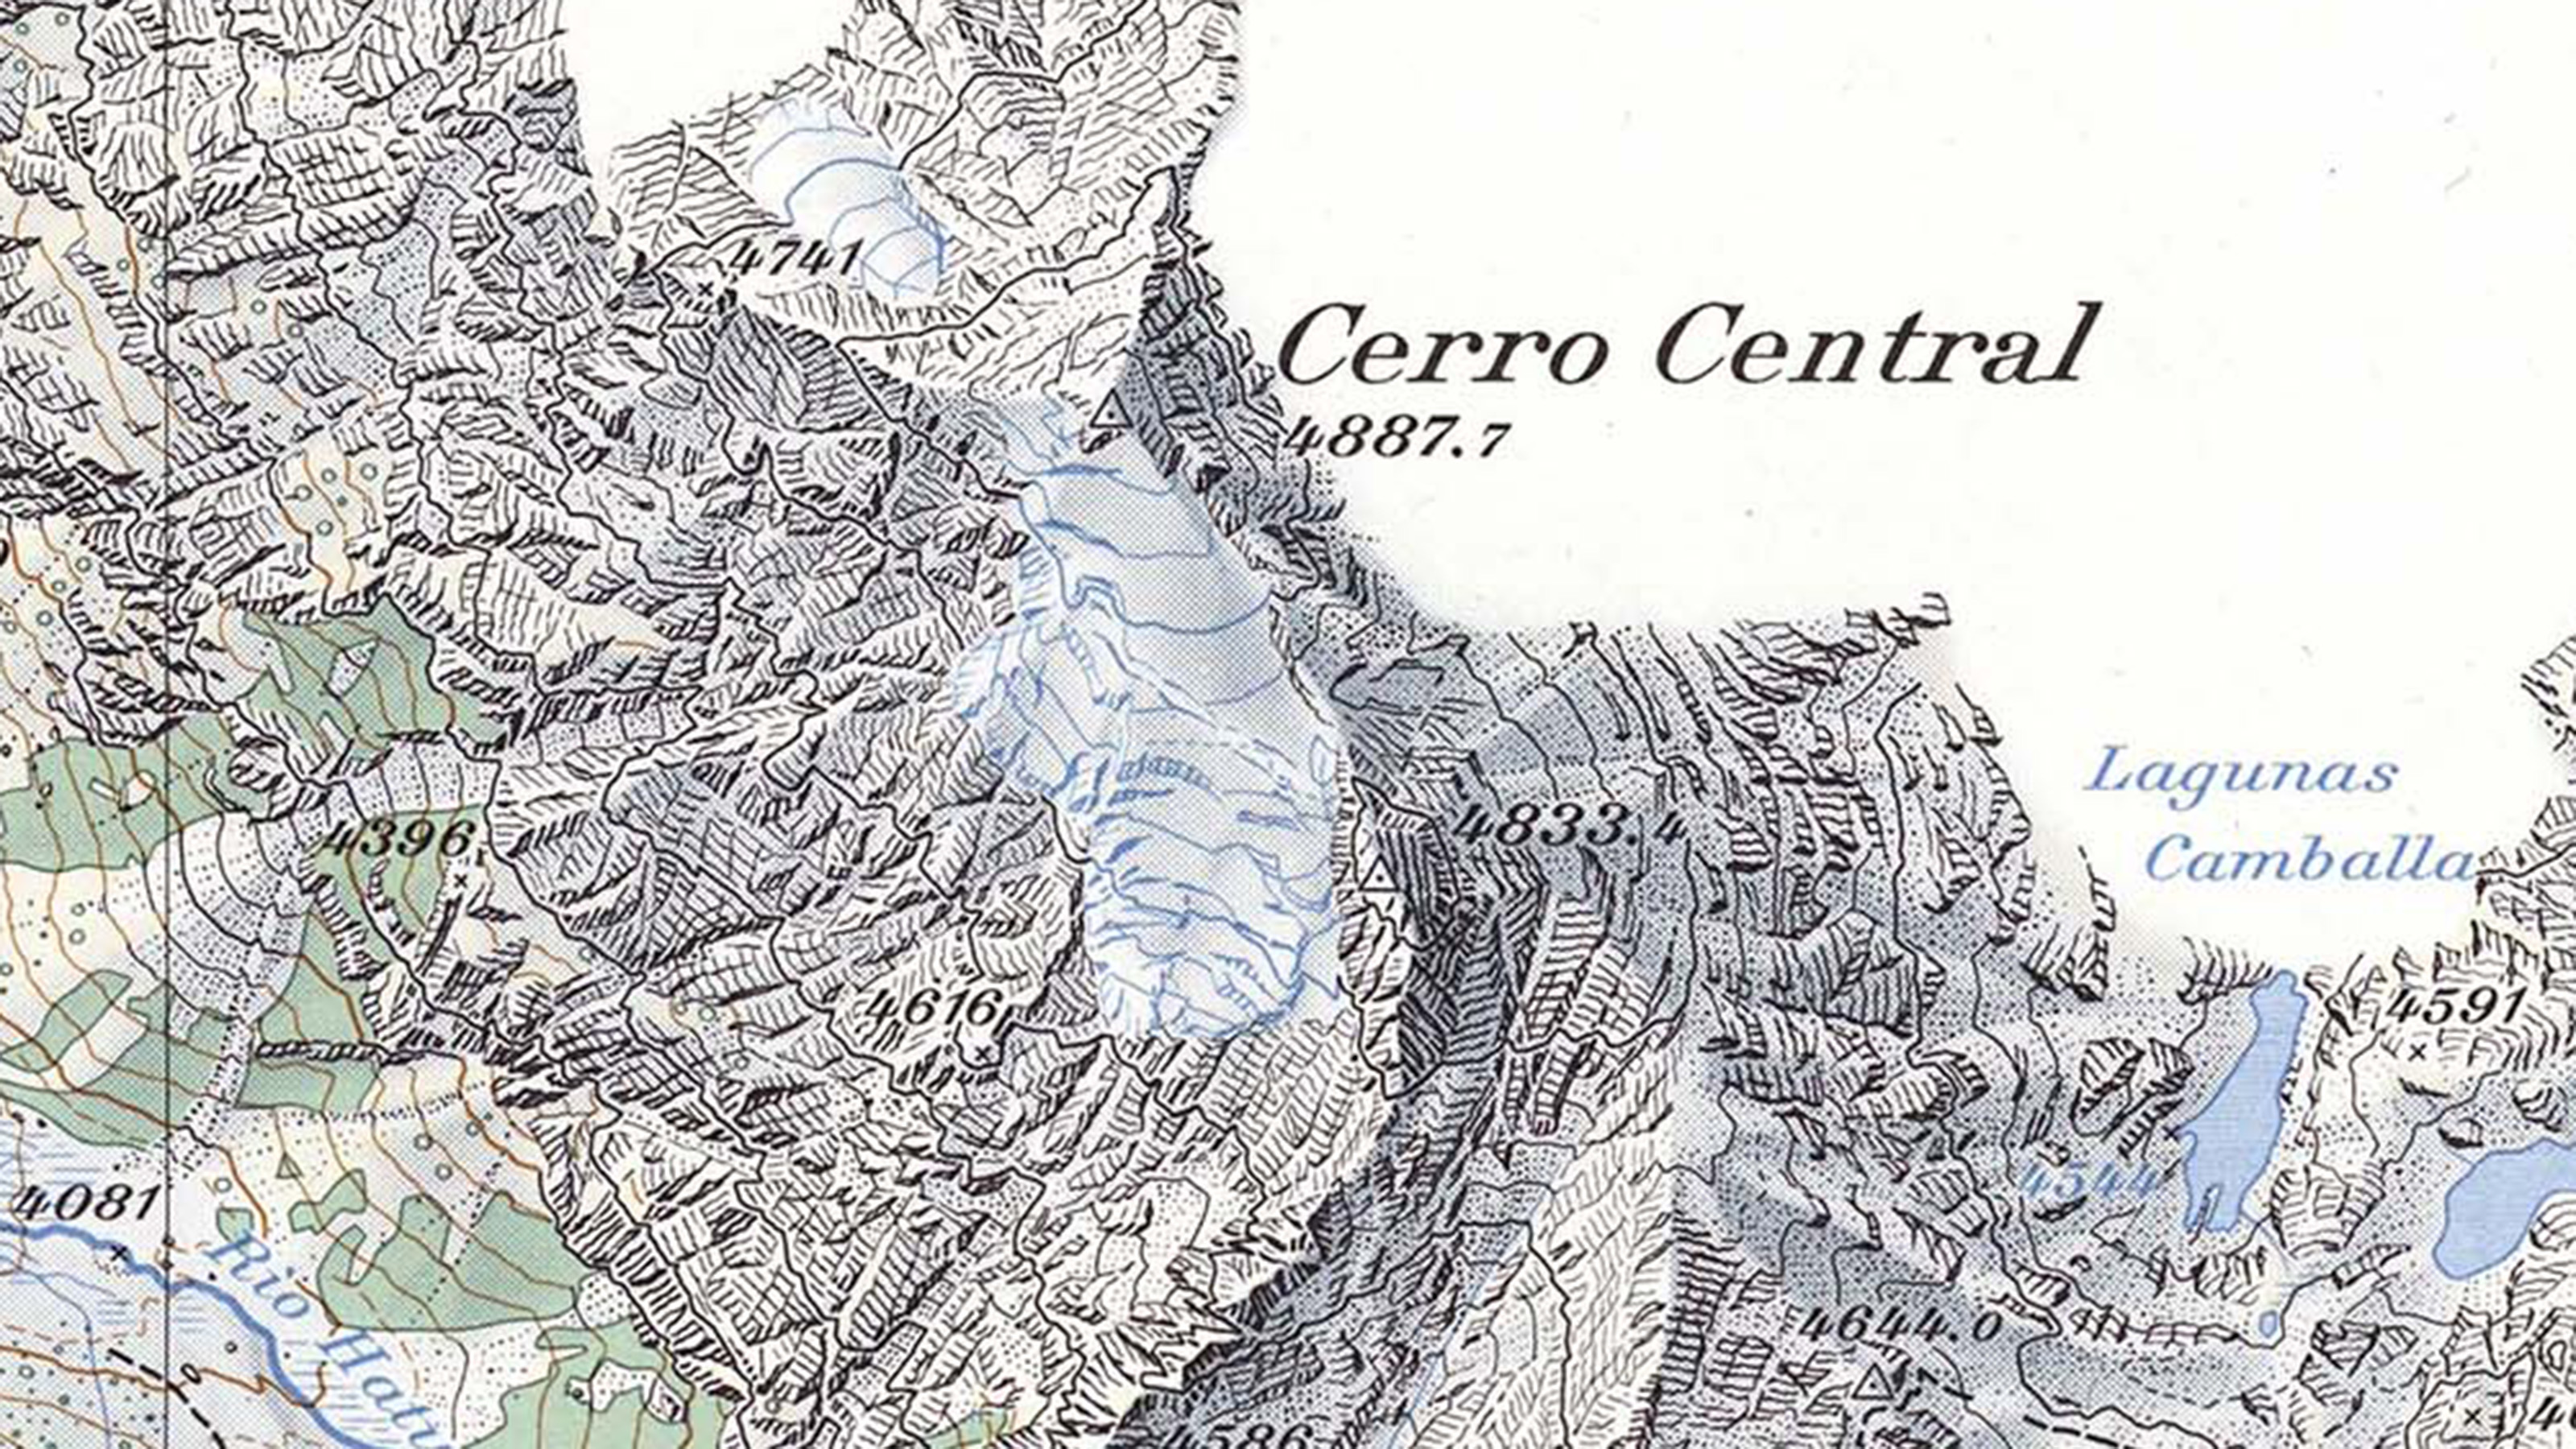 Extrait de la carte Panta. Elle montre les montagnes péruviennes, les glaciers, les prairies et les cours d'eau à la manière suisse.